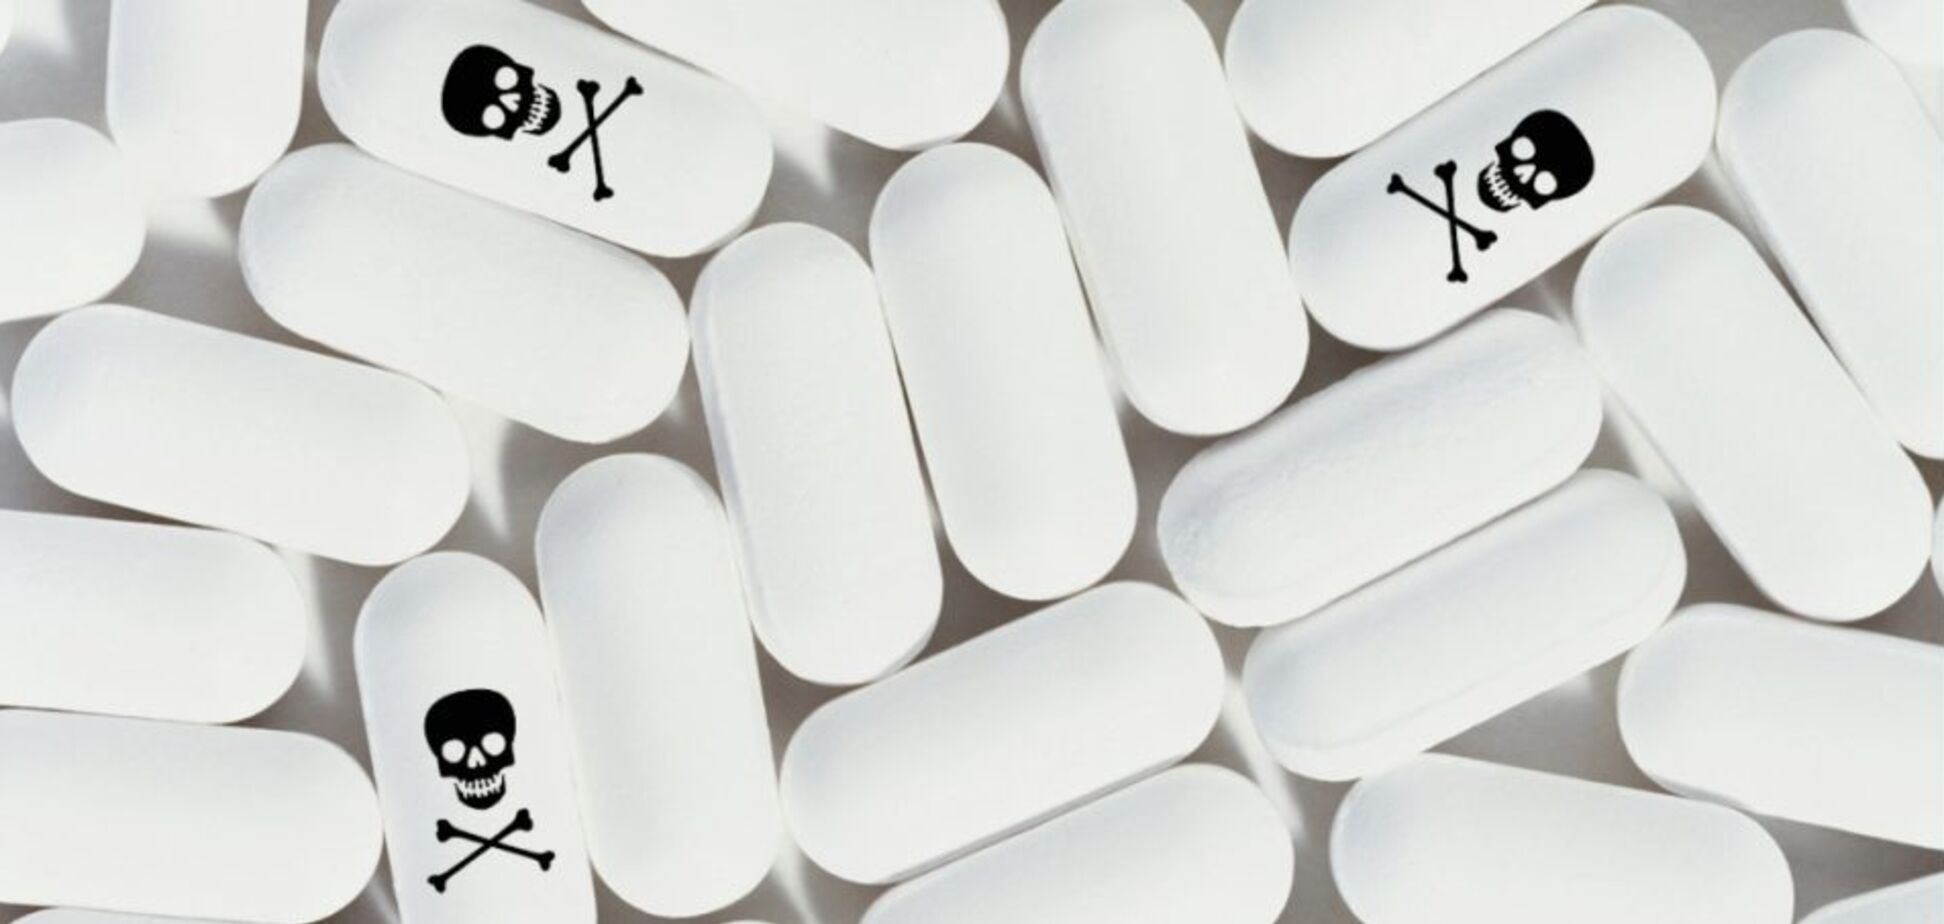 В Украине забили тревогу из-за поддельных лекарств: как распознать фальсификат